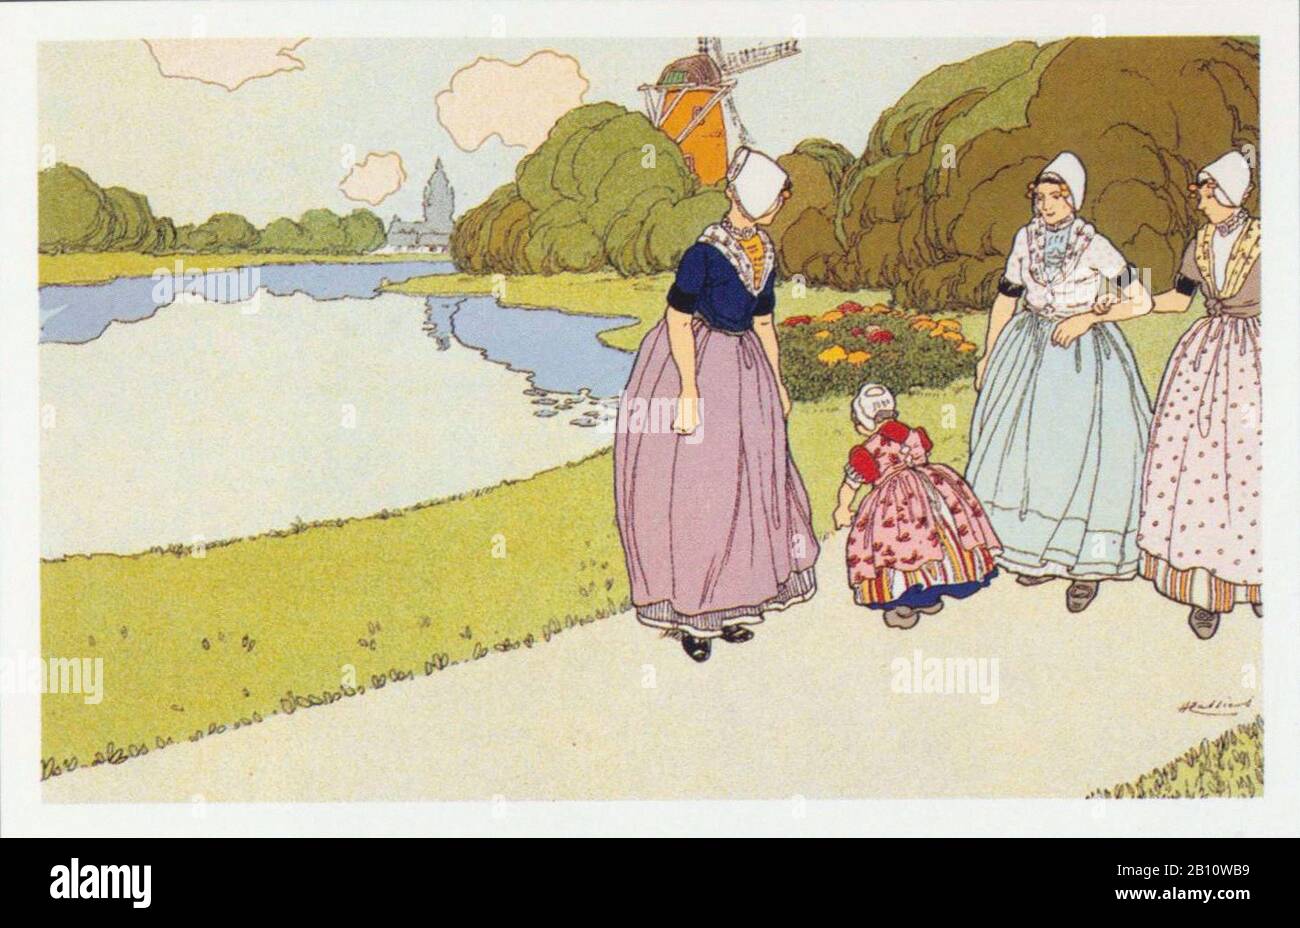 Middelburg vijver - Ilustración de Henri Casers (1858 - 1944) Foto de stock